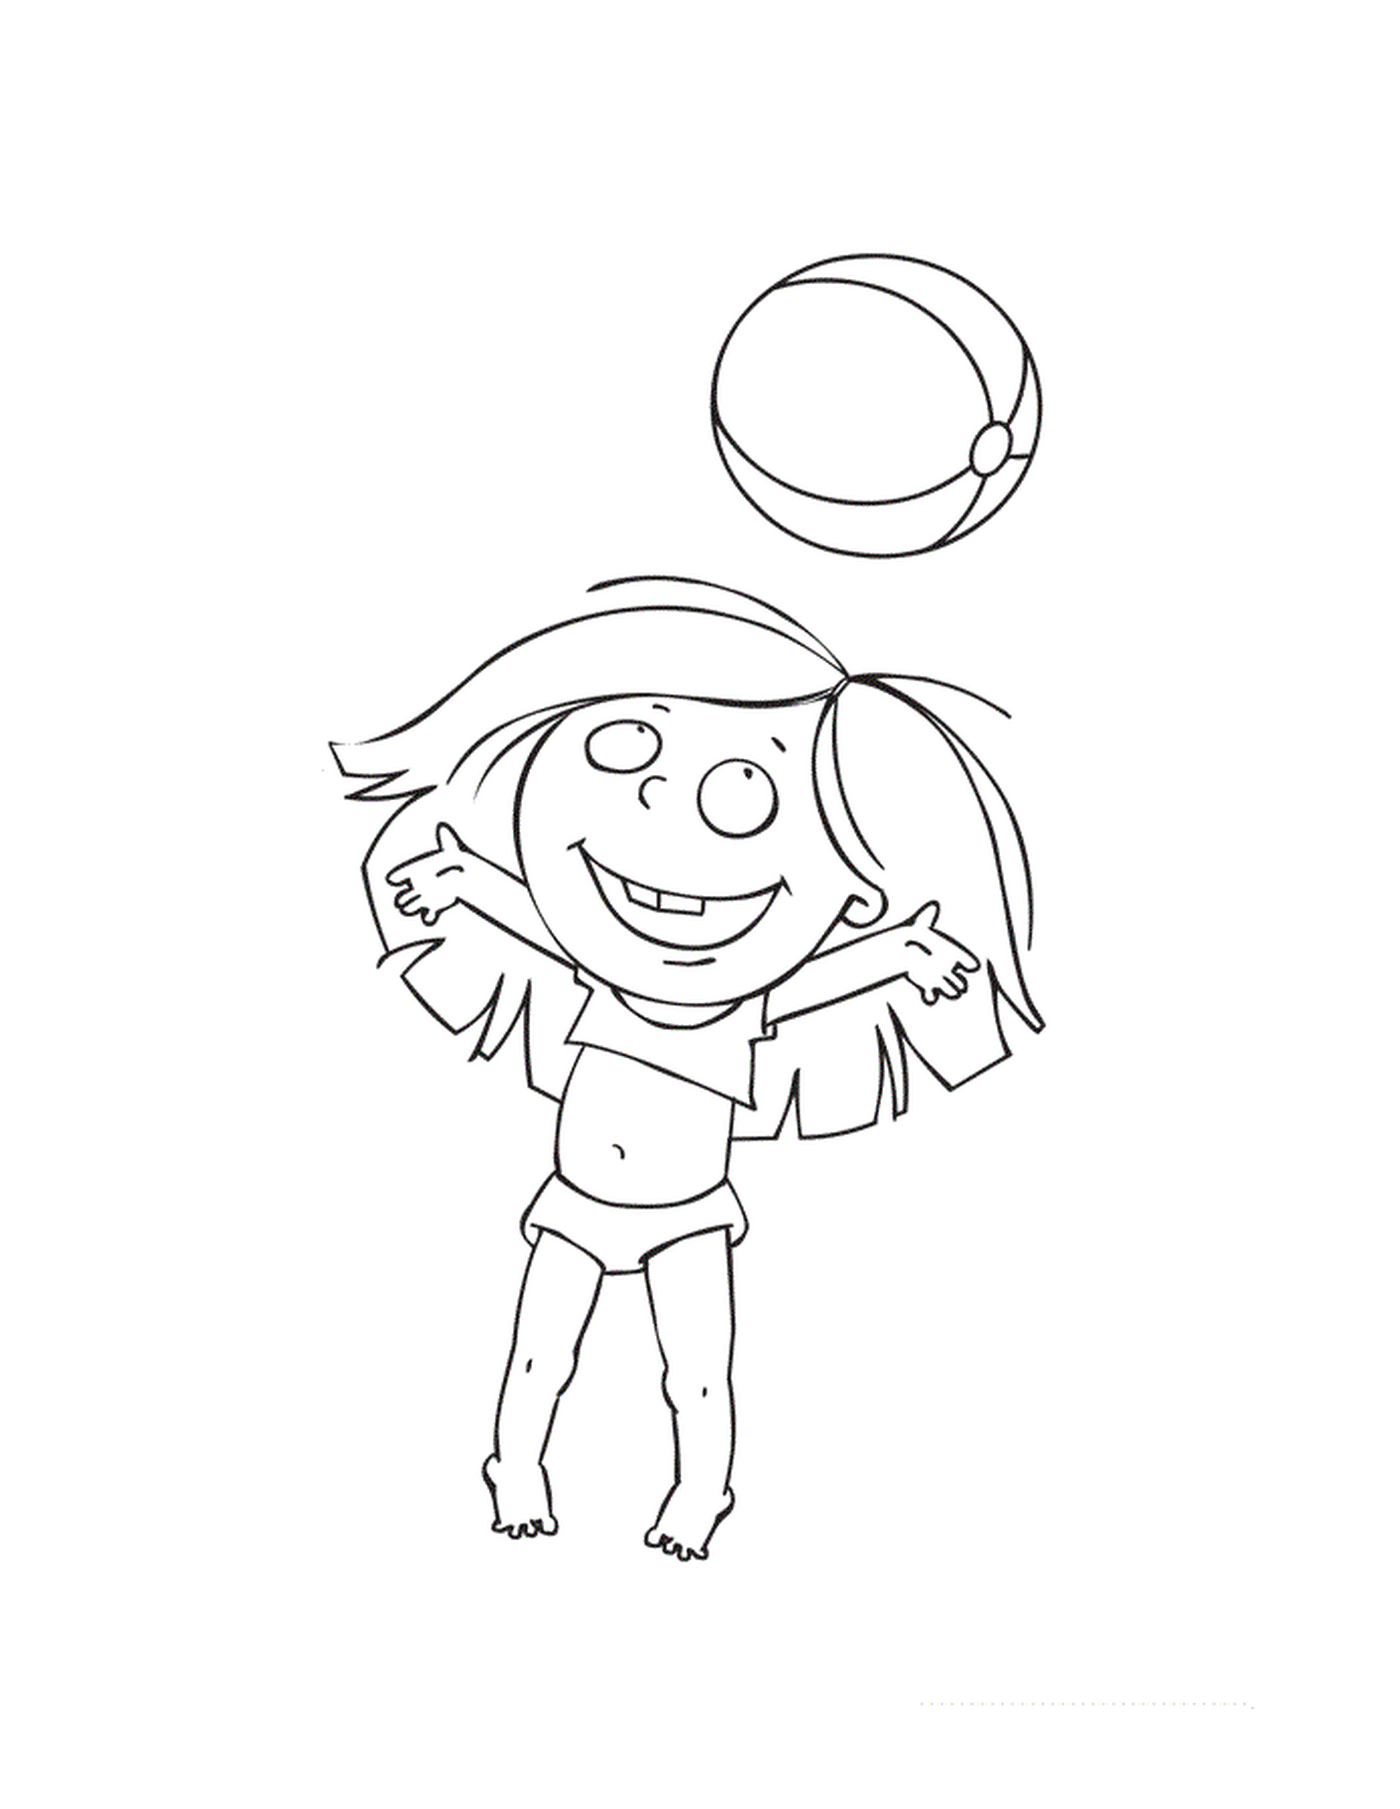   Un enfant joue avec un ballon sur la plage pendant les vacances d'été 